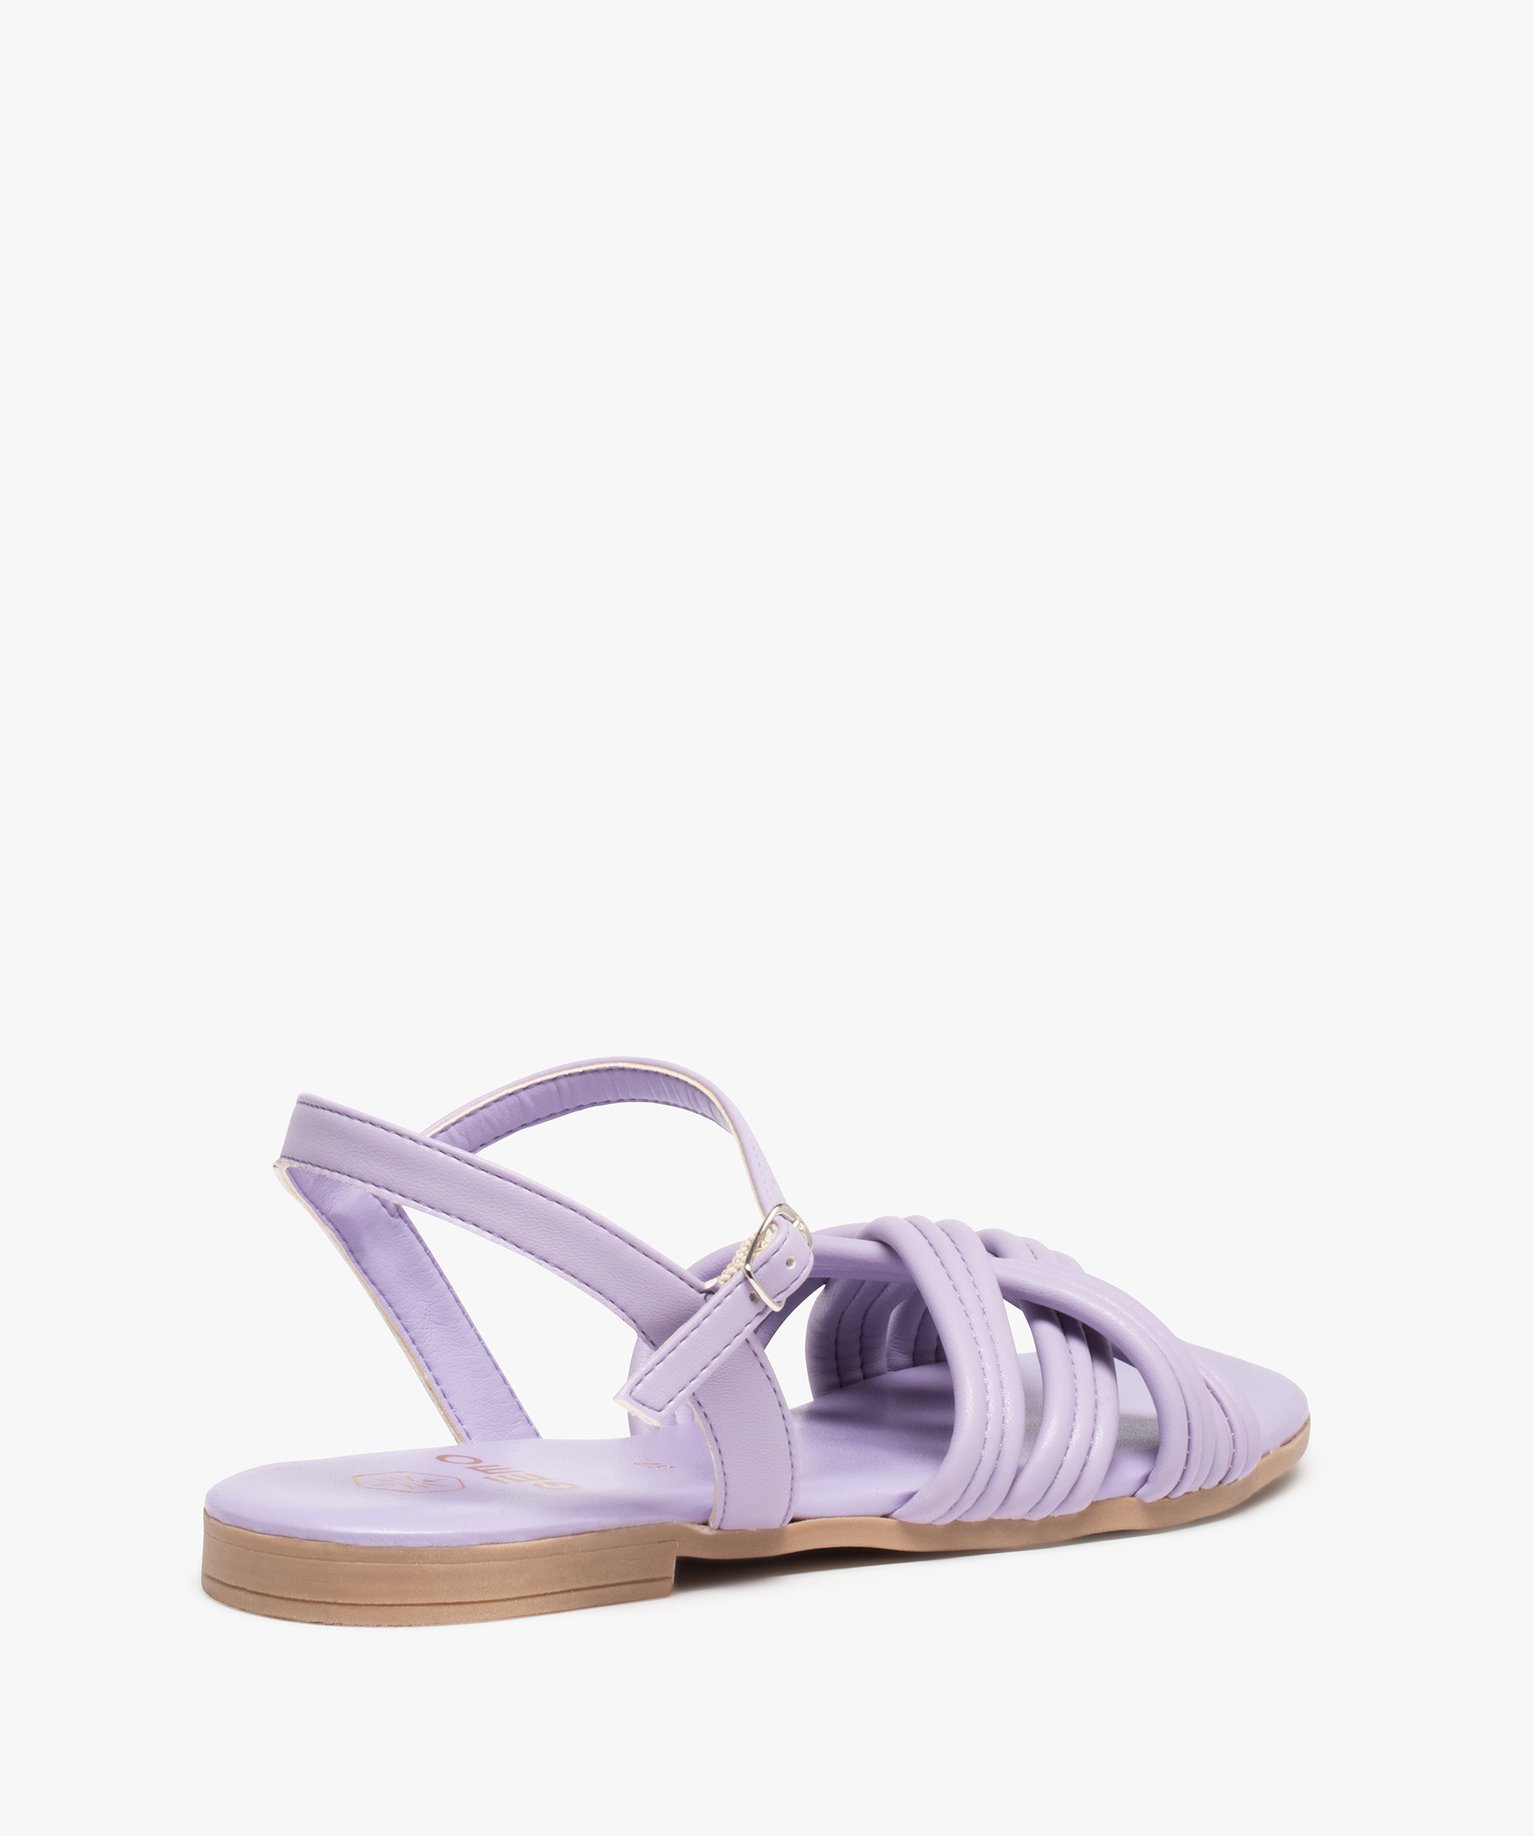 Tongs Synthétique Ellesse en coloris Violet Femme Chaussures Chaussures plates Sandales et claquettes 